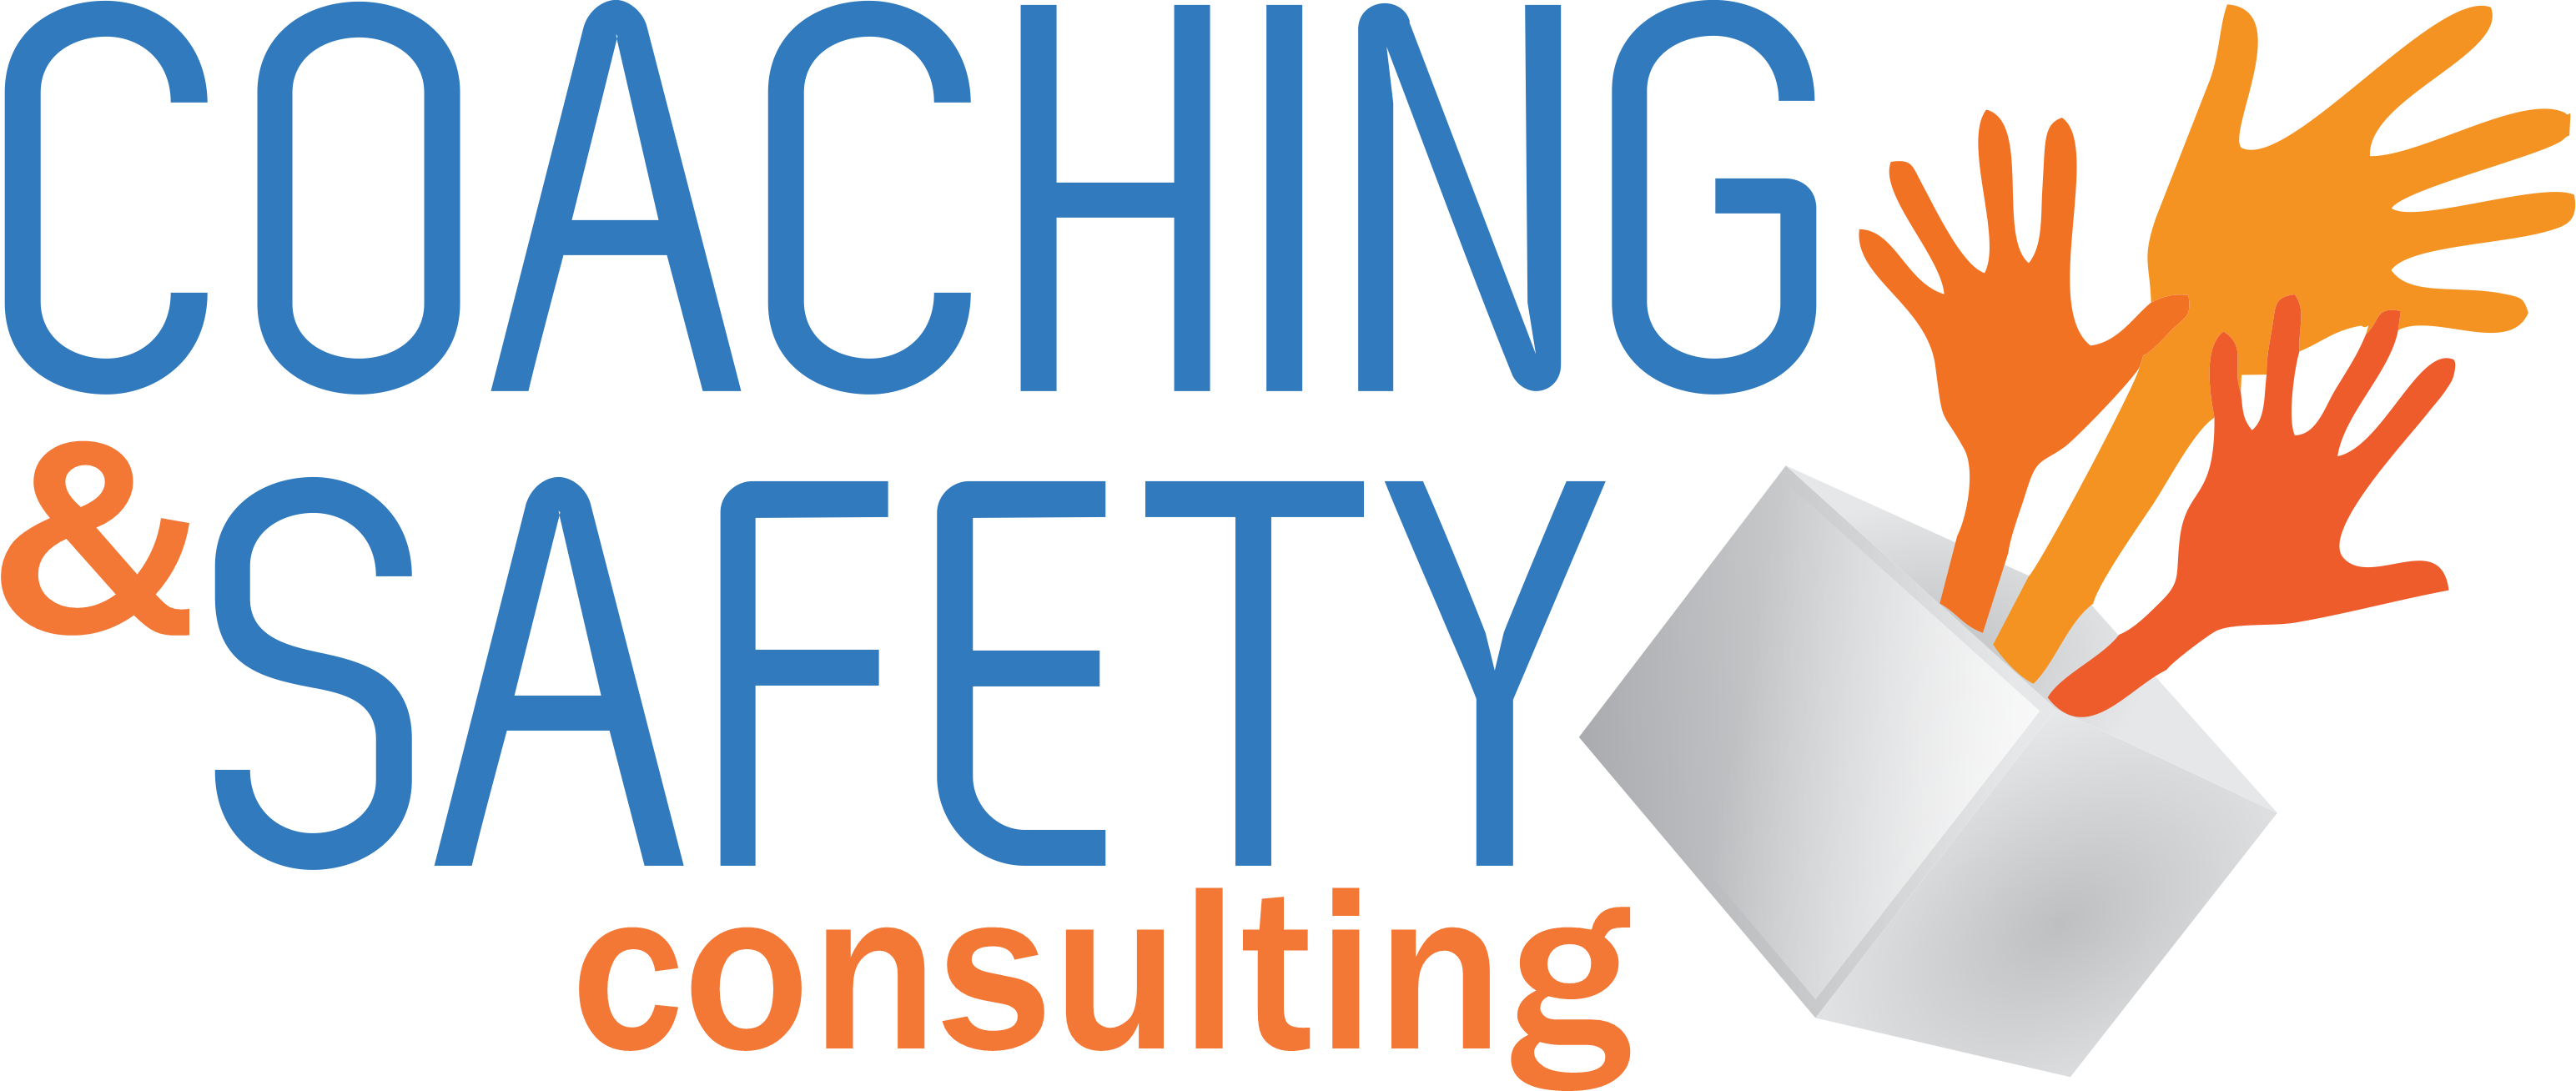 Logo Coaching & Safety